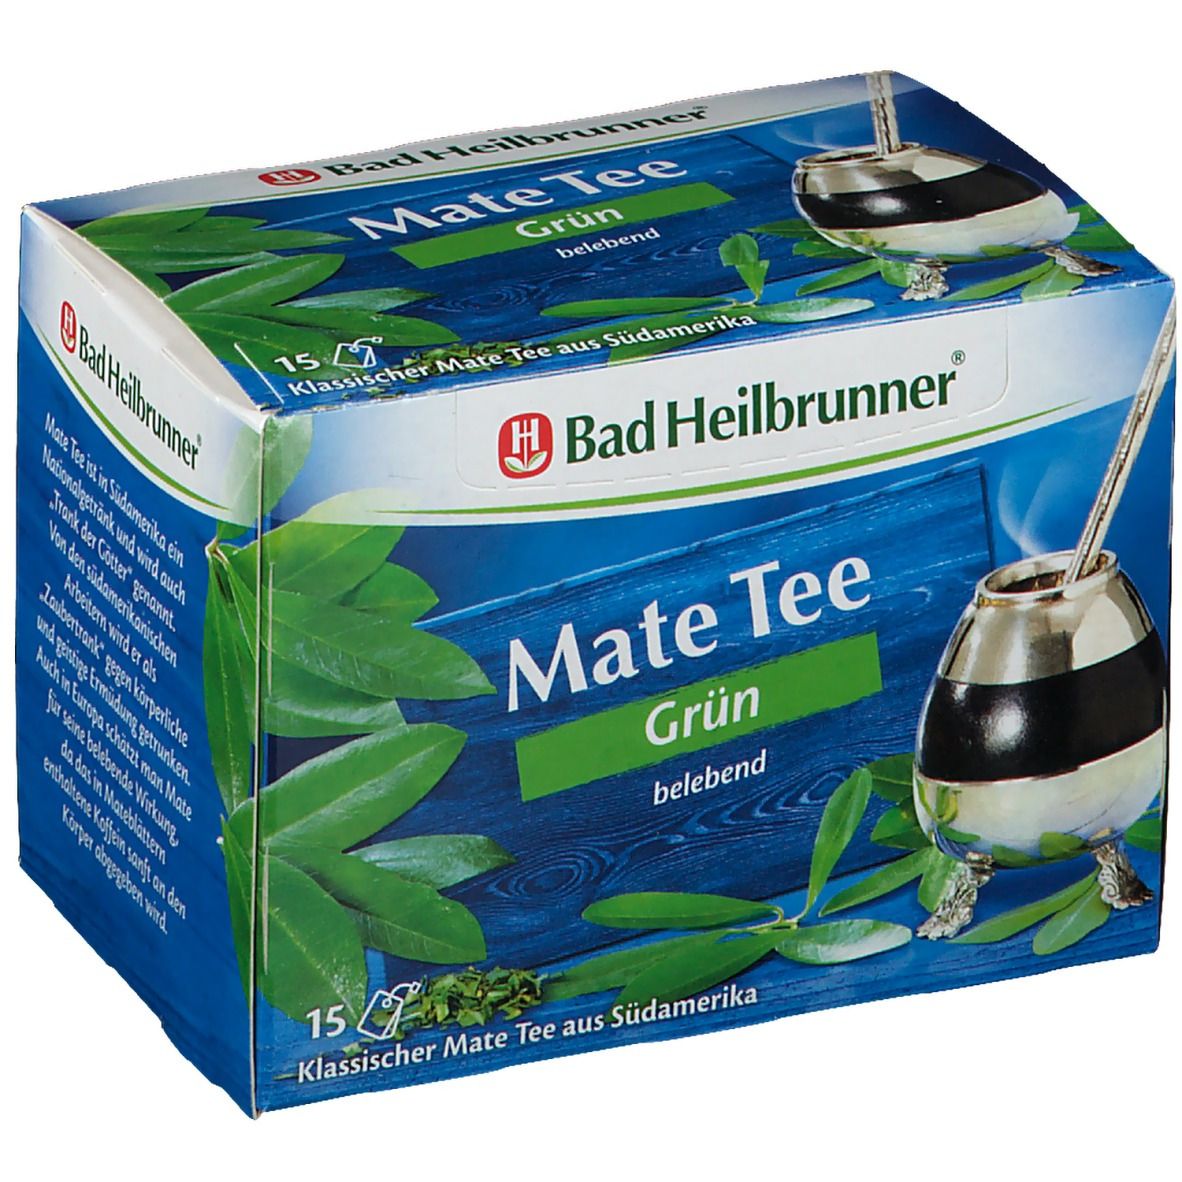 Bad Heilbrunner® Mate Tee Grün